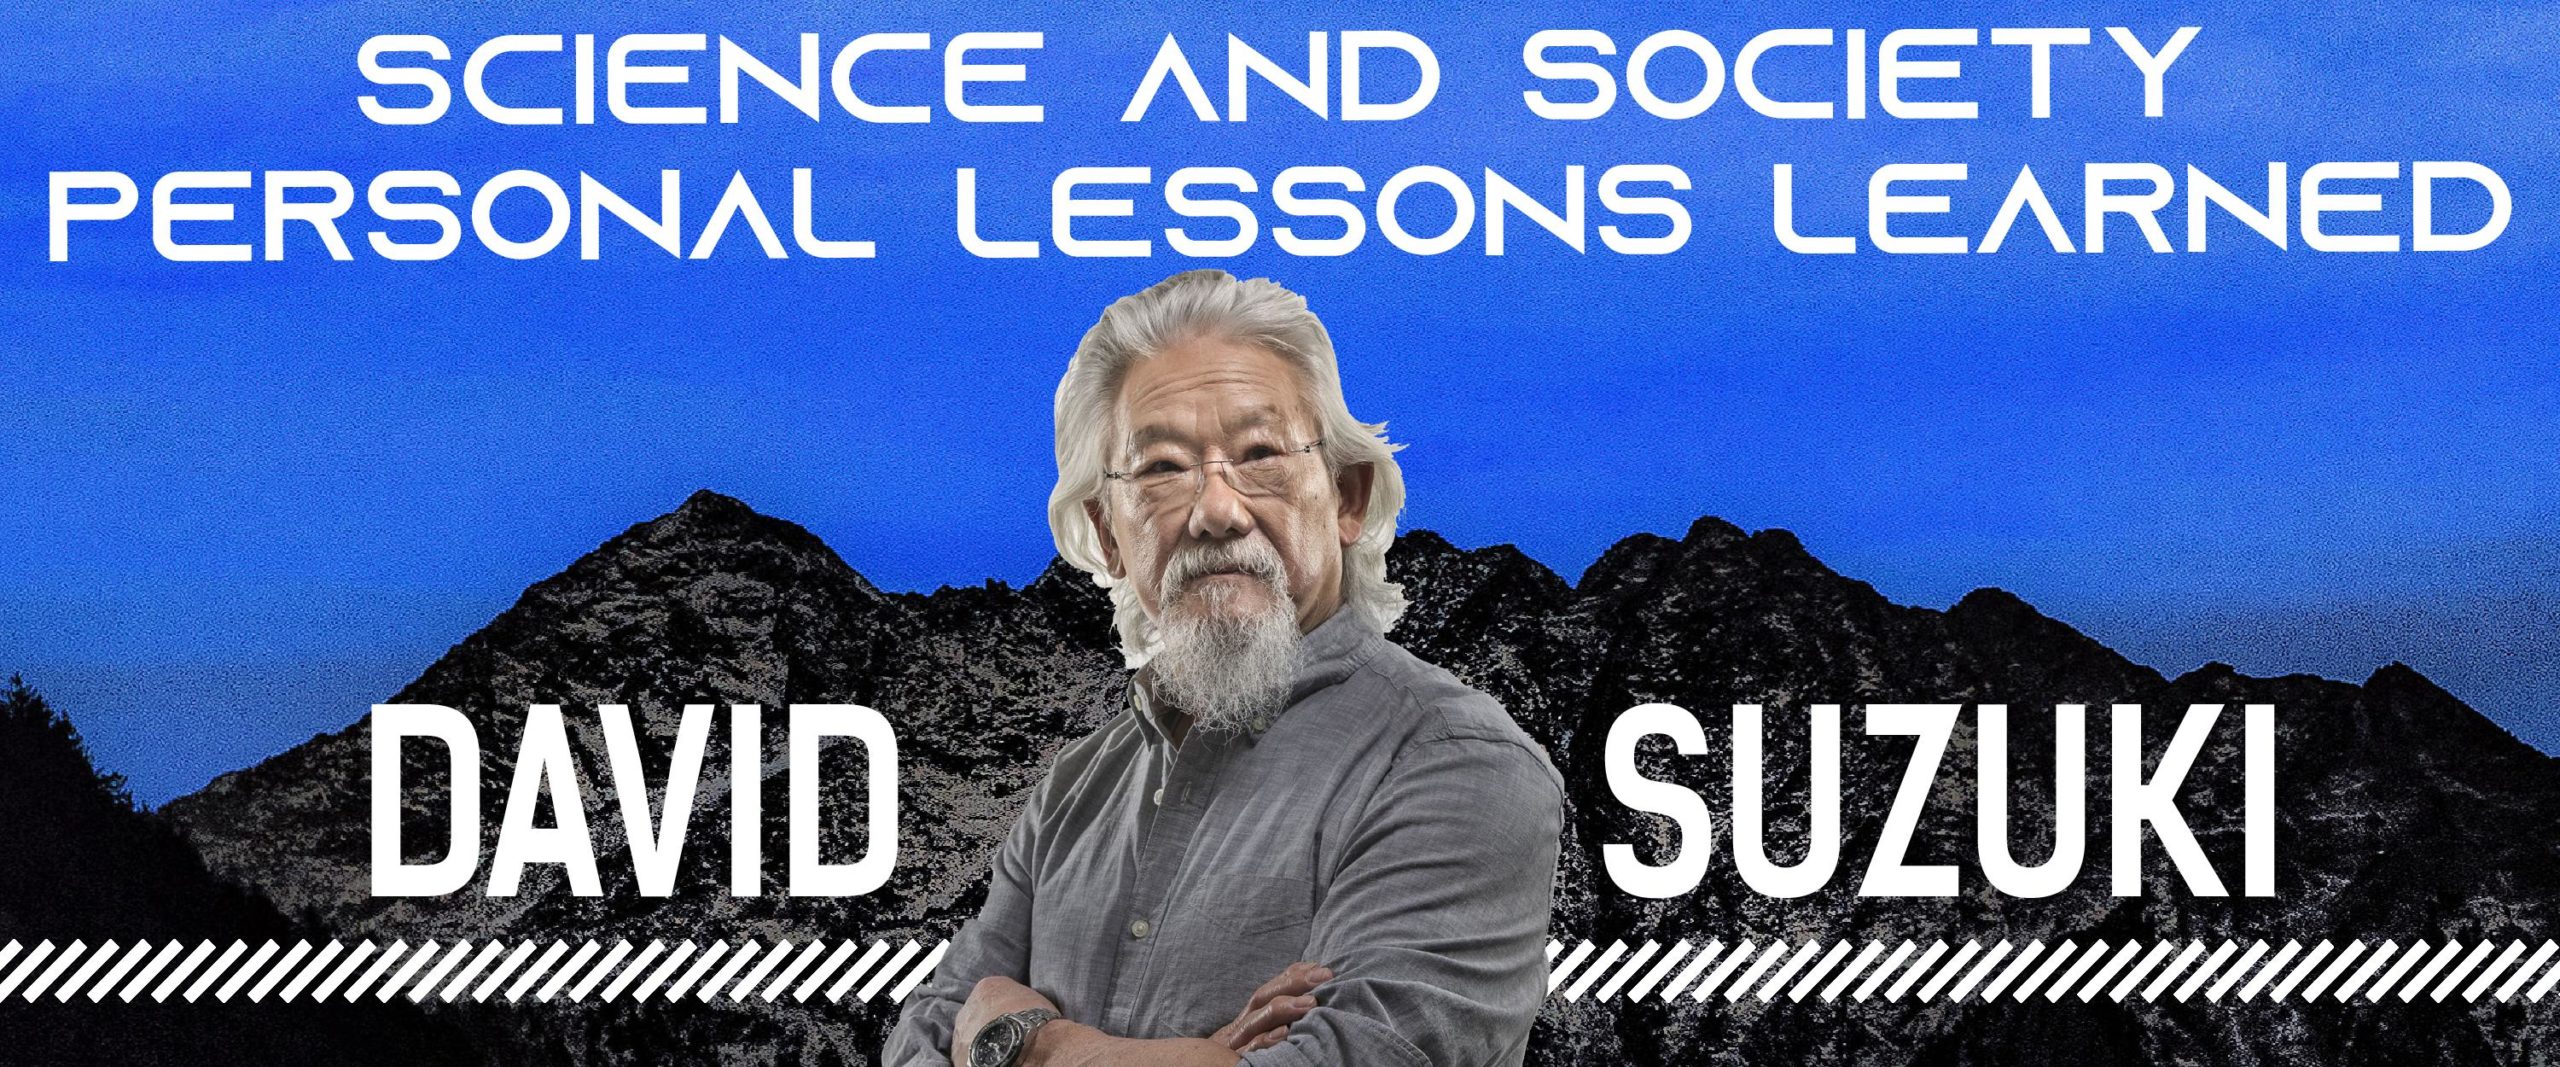 Photo d'un homme asiatique devant une montagne avec le texte : Science et société - Leçons personnelles apprises David Suzuki